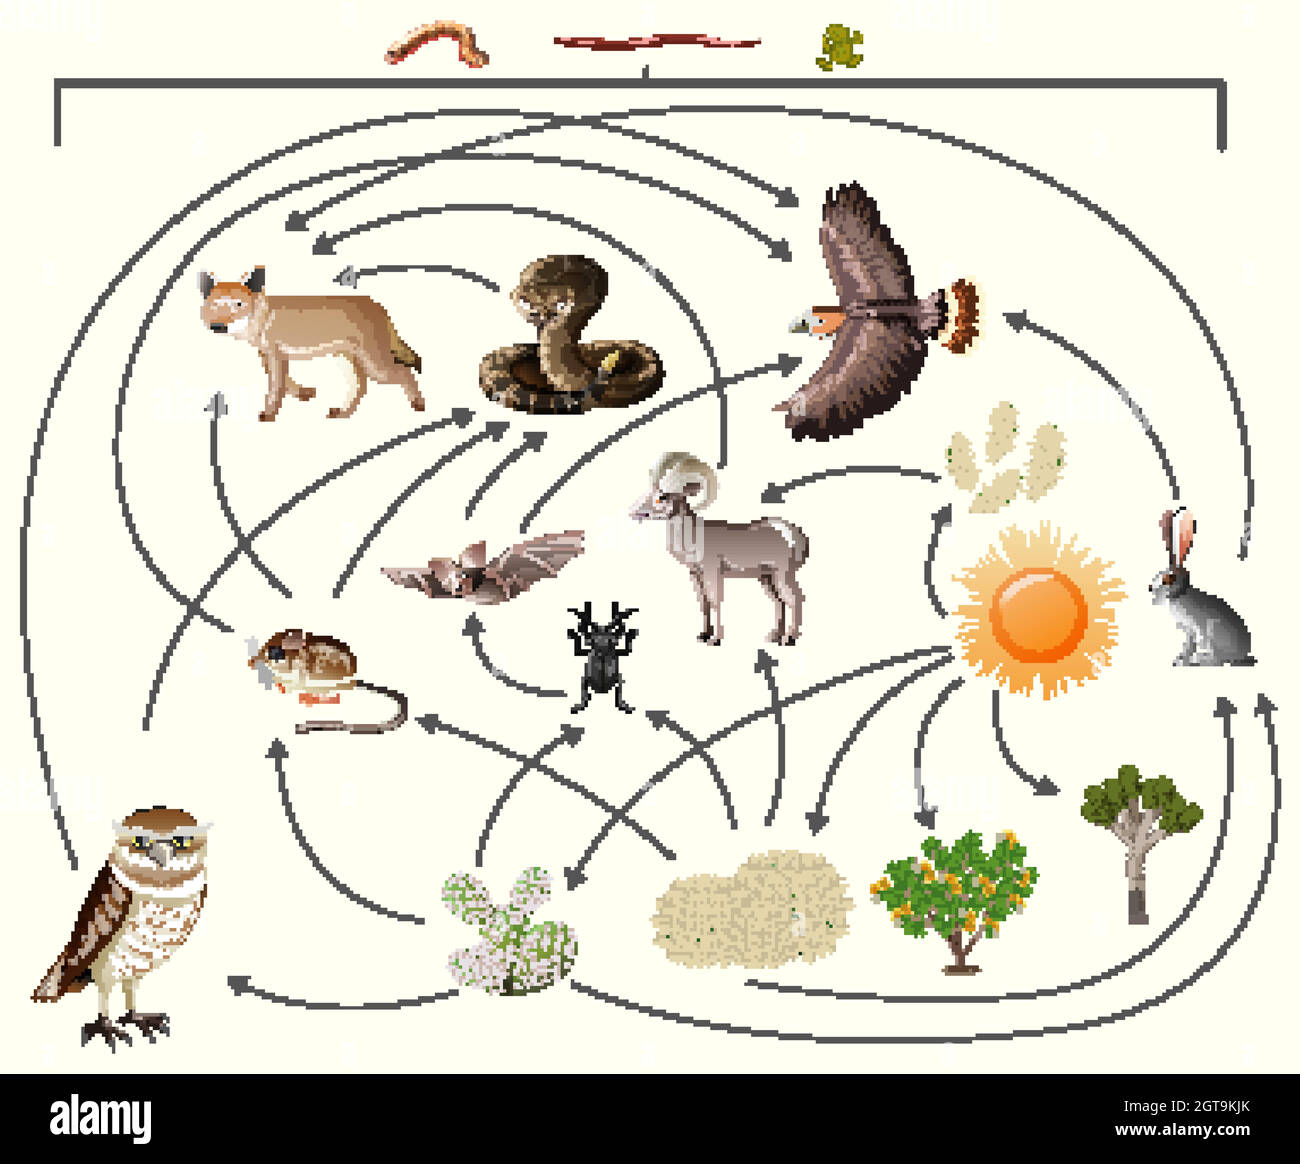 Catena alimentare descrive chi mangia chi in natura su sfondo bianco Illustrazione Vettoriale